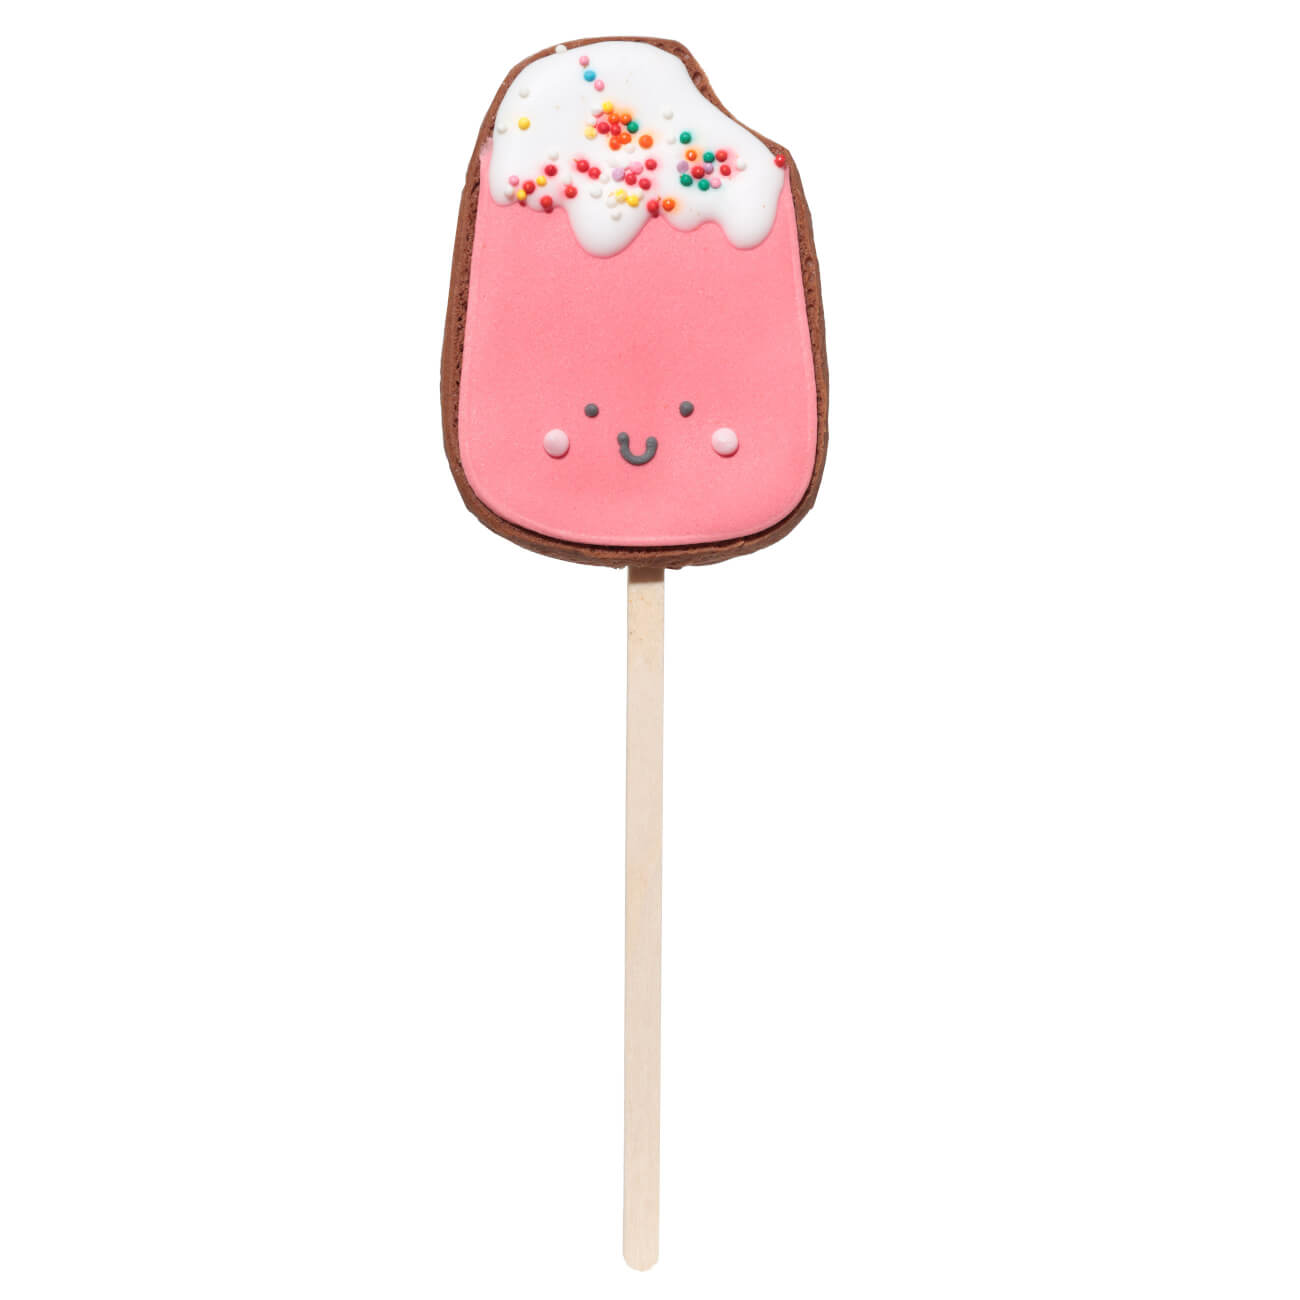 Пряник, 40 гр, глазированный, шоколадный, на палочке, розовый, Мороженое, Prani изображение № 1